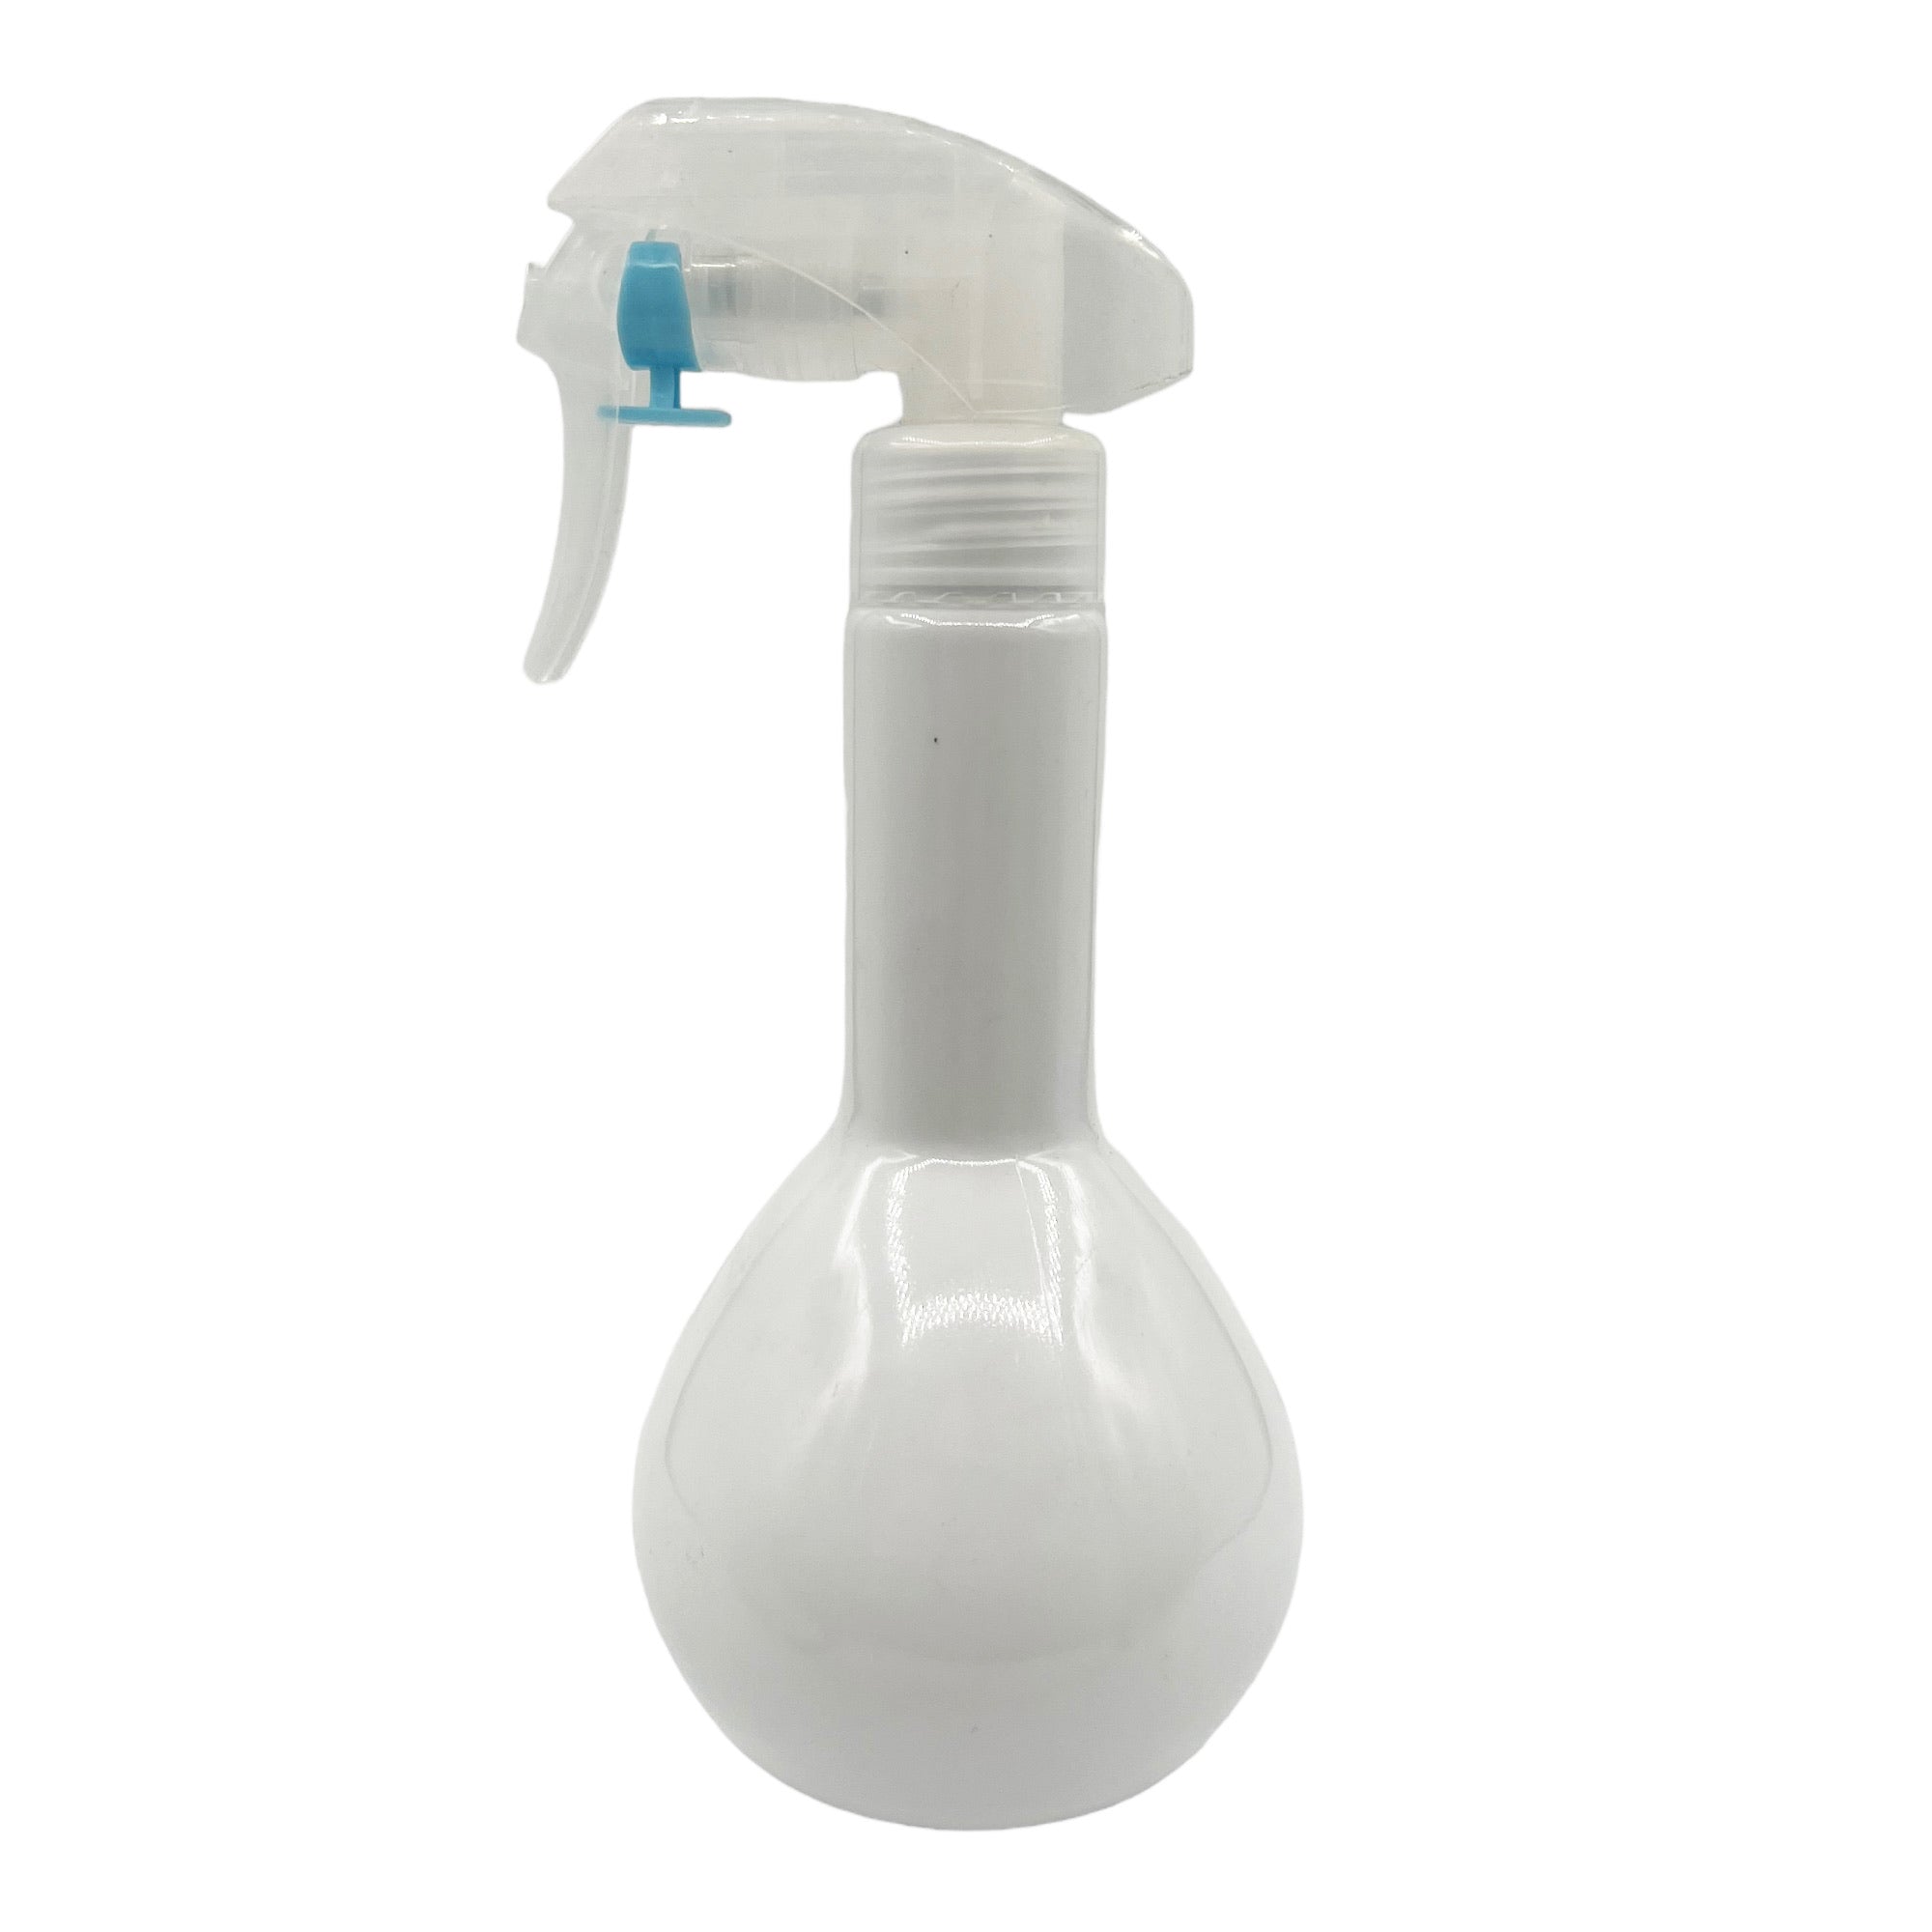 Eson - Water Spray Bottle 300ml Round Empty Refillable Ultra Fine Mist Sprayer (White) - Eson Direct